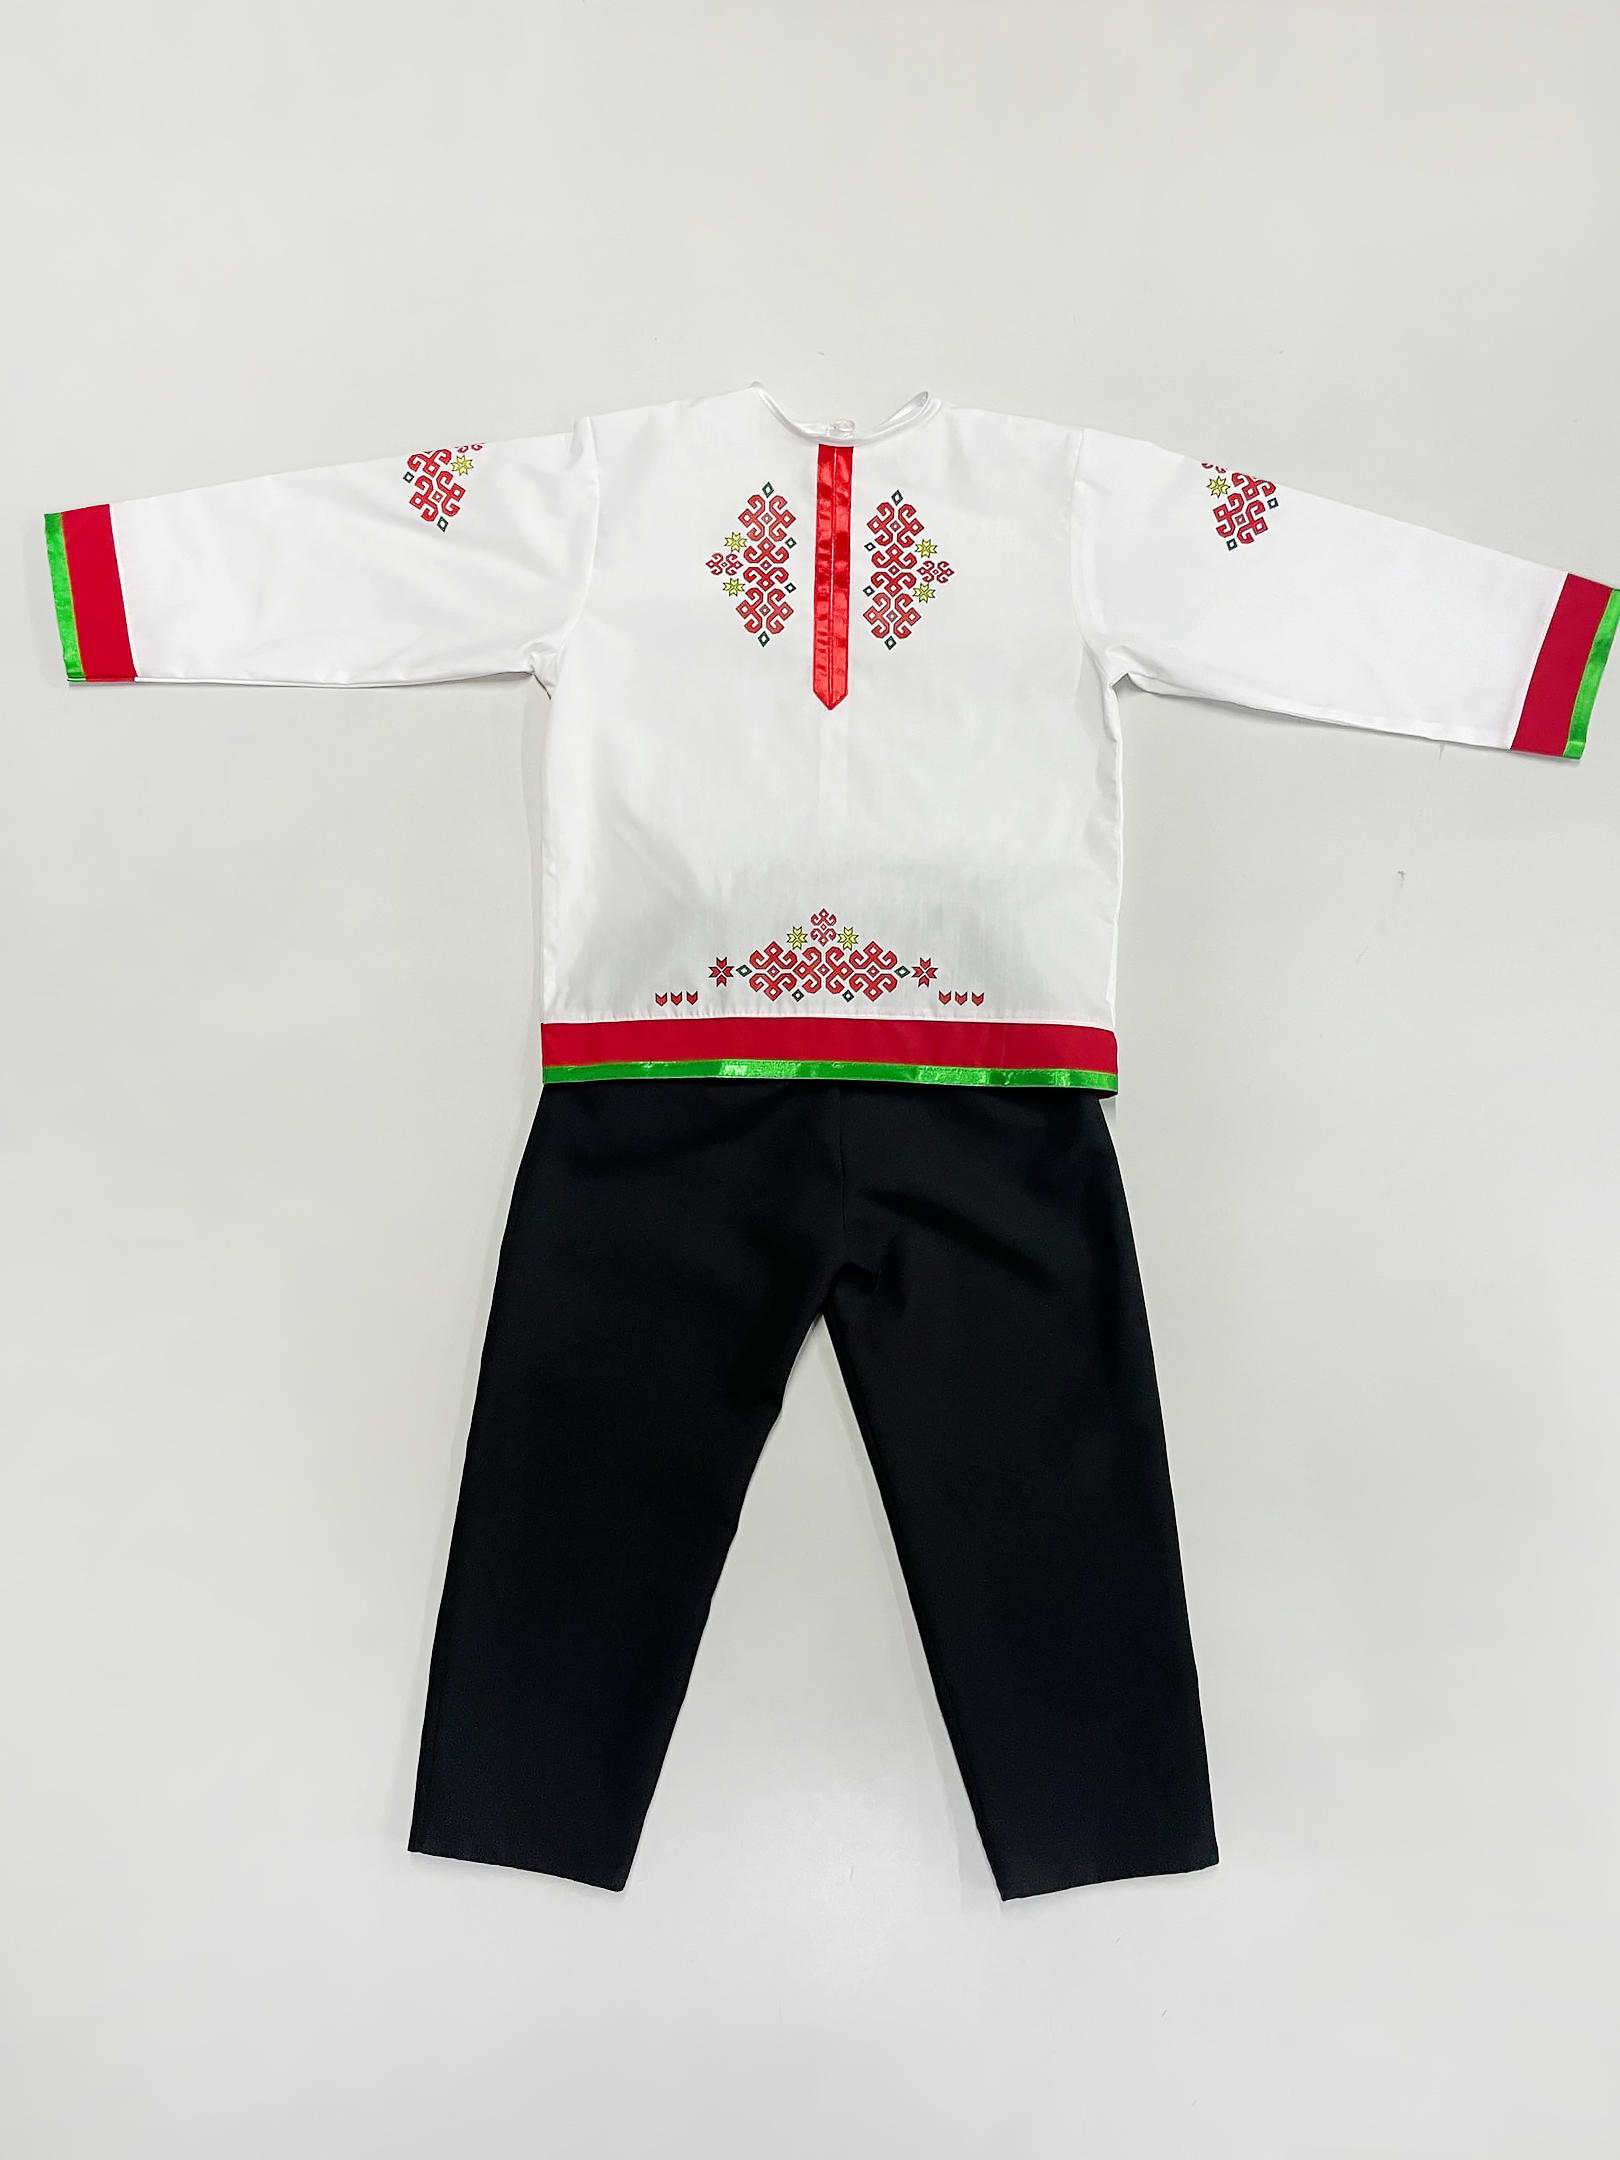 Чувашский народный костюм (мальчик)